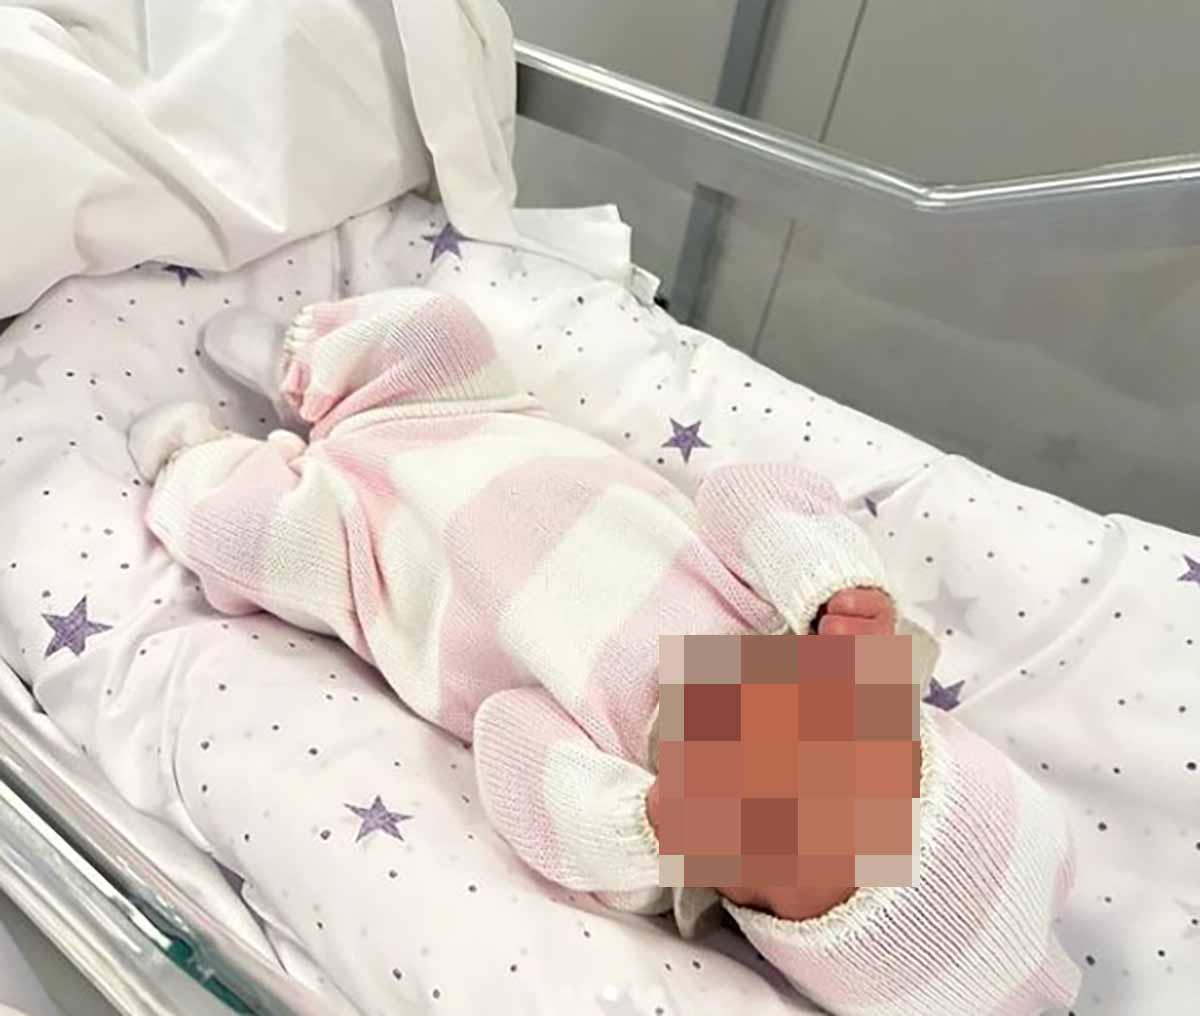 Alice Campello, mujer de Álvaro Morata, en la UCI tras dar a luz a su cuarto hijo, una niña llamada Bella